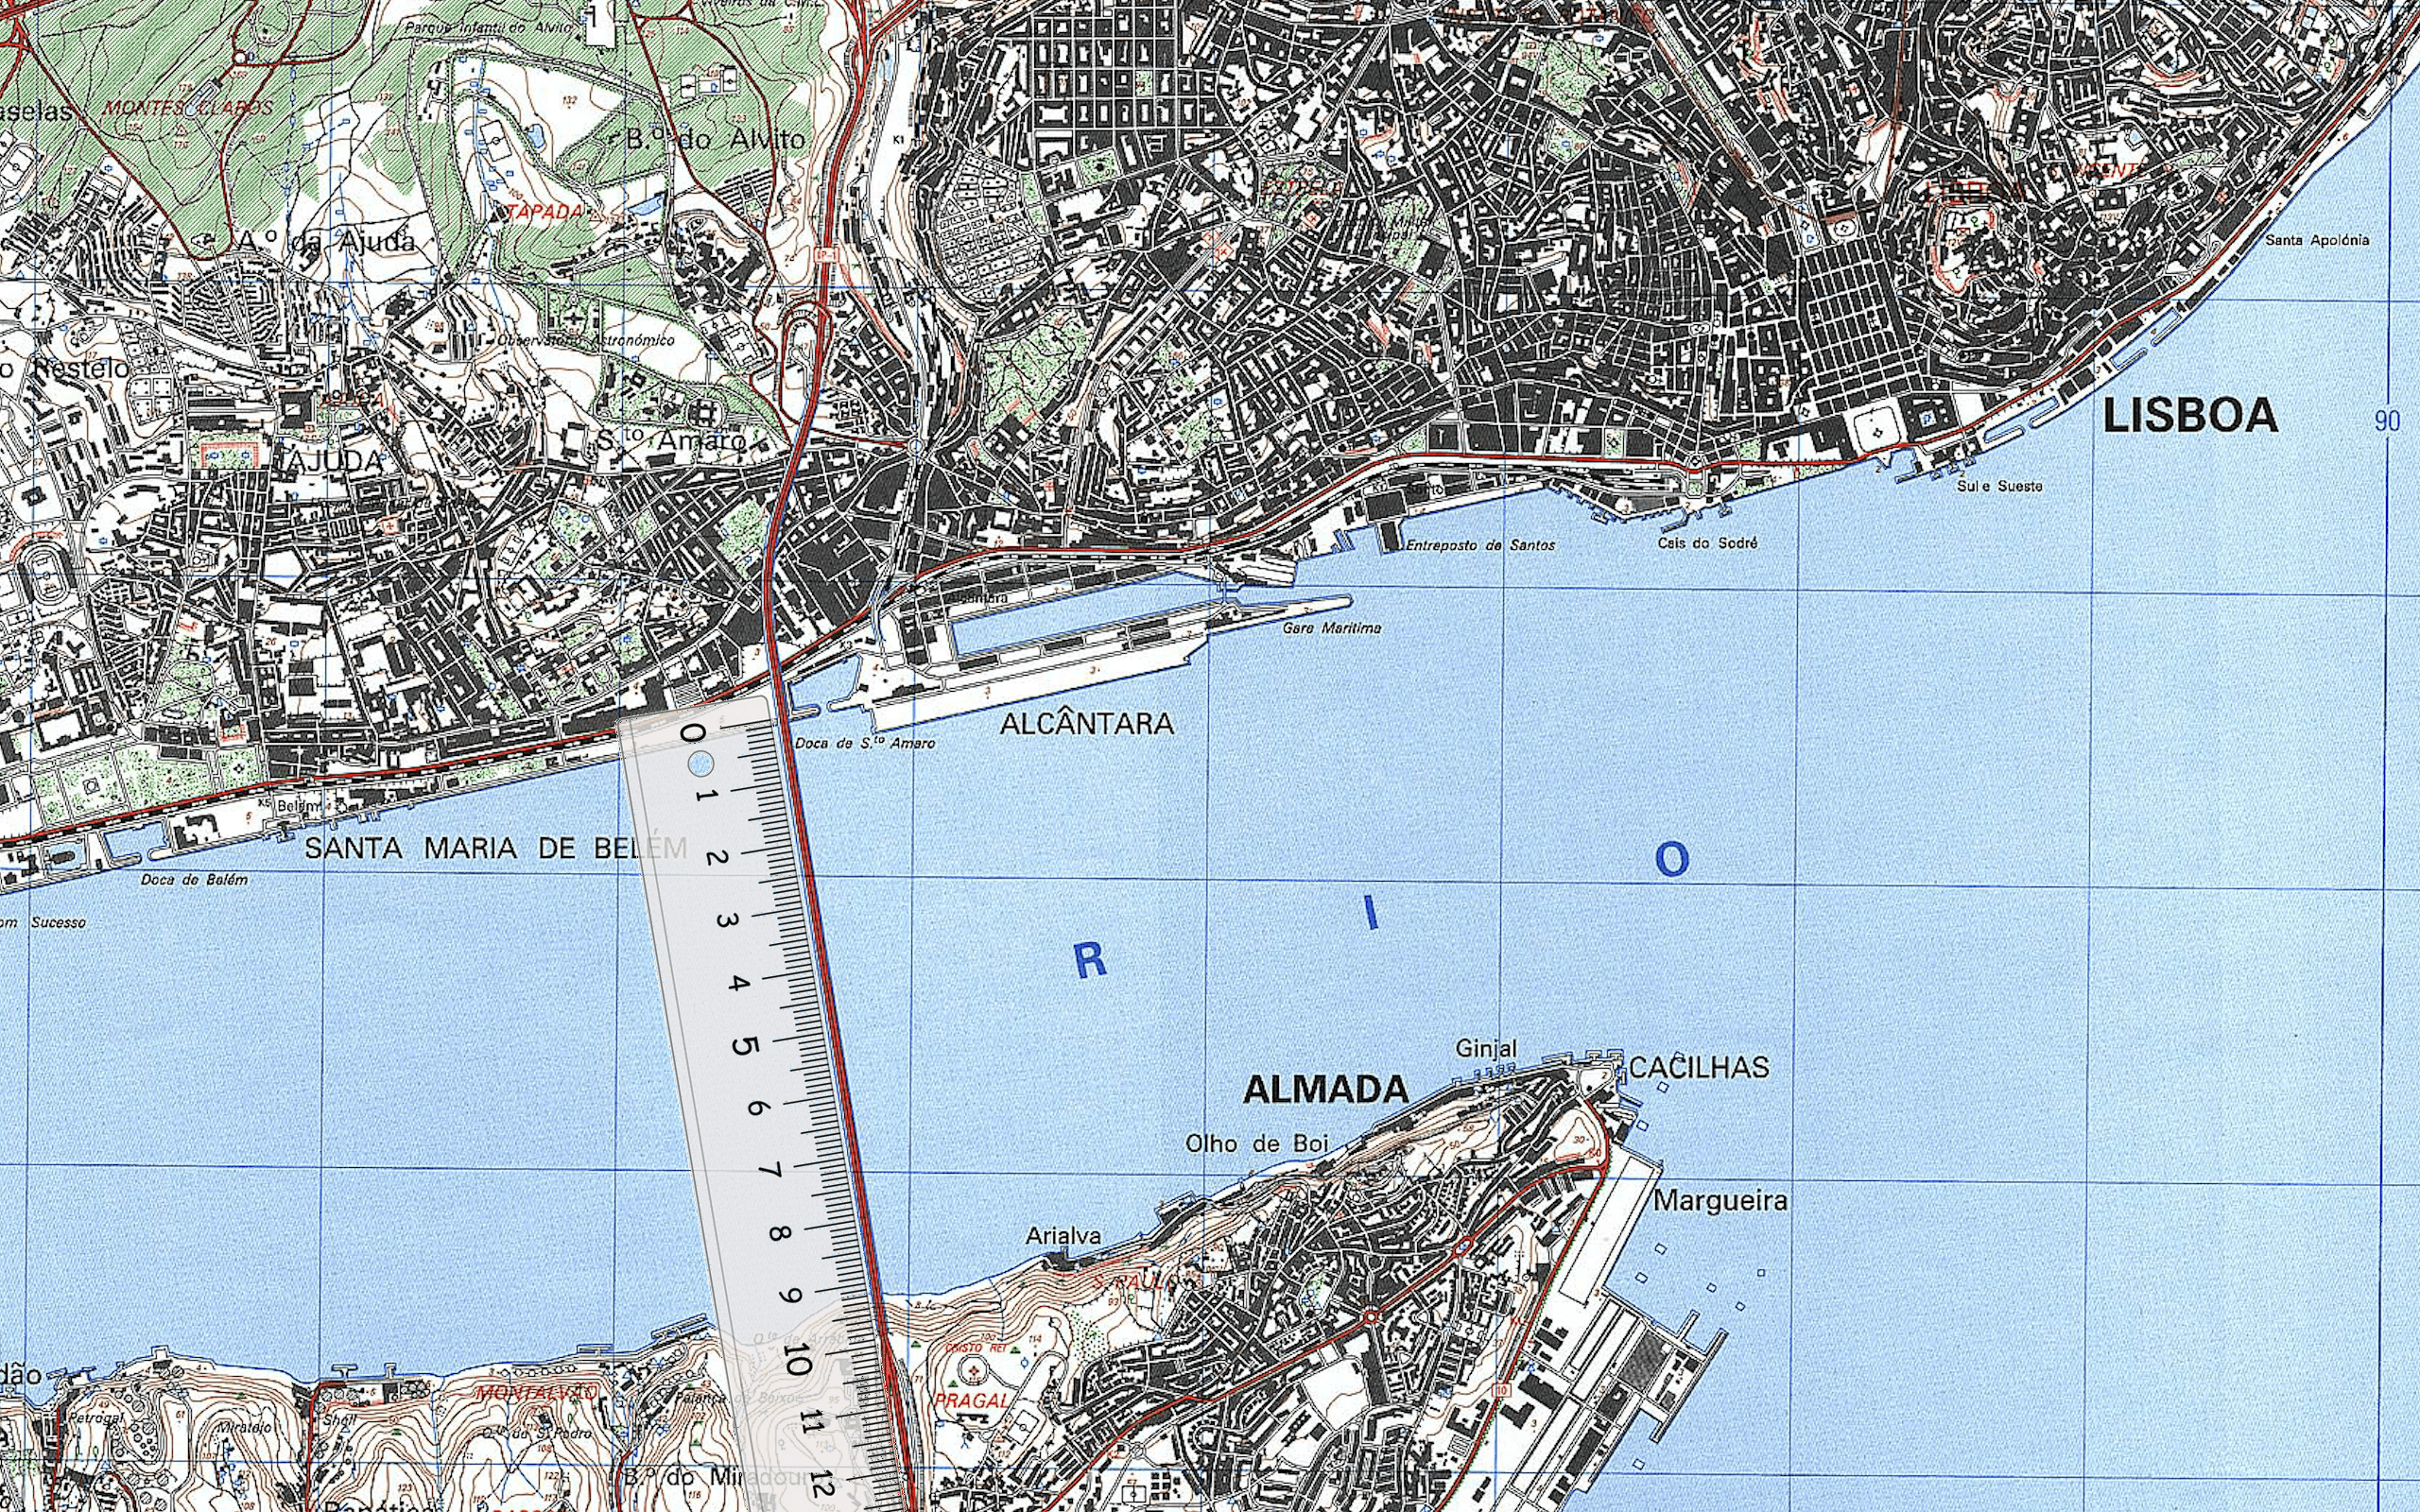 Mapa topográfico - Lisboa.